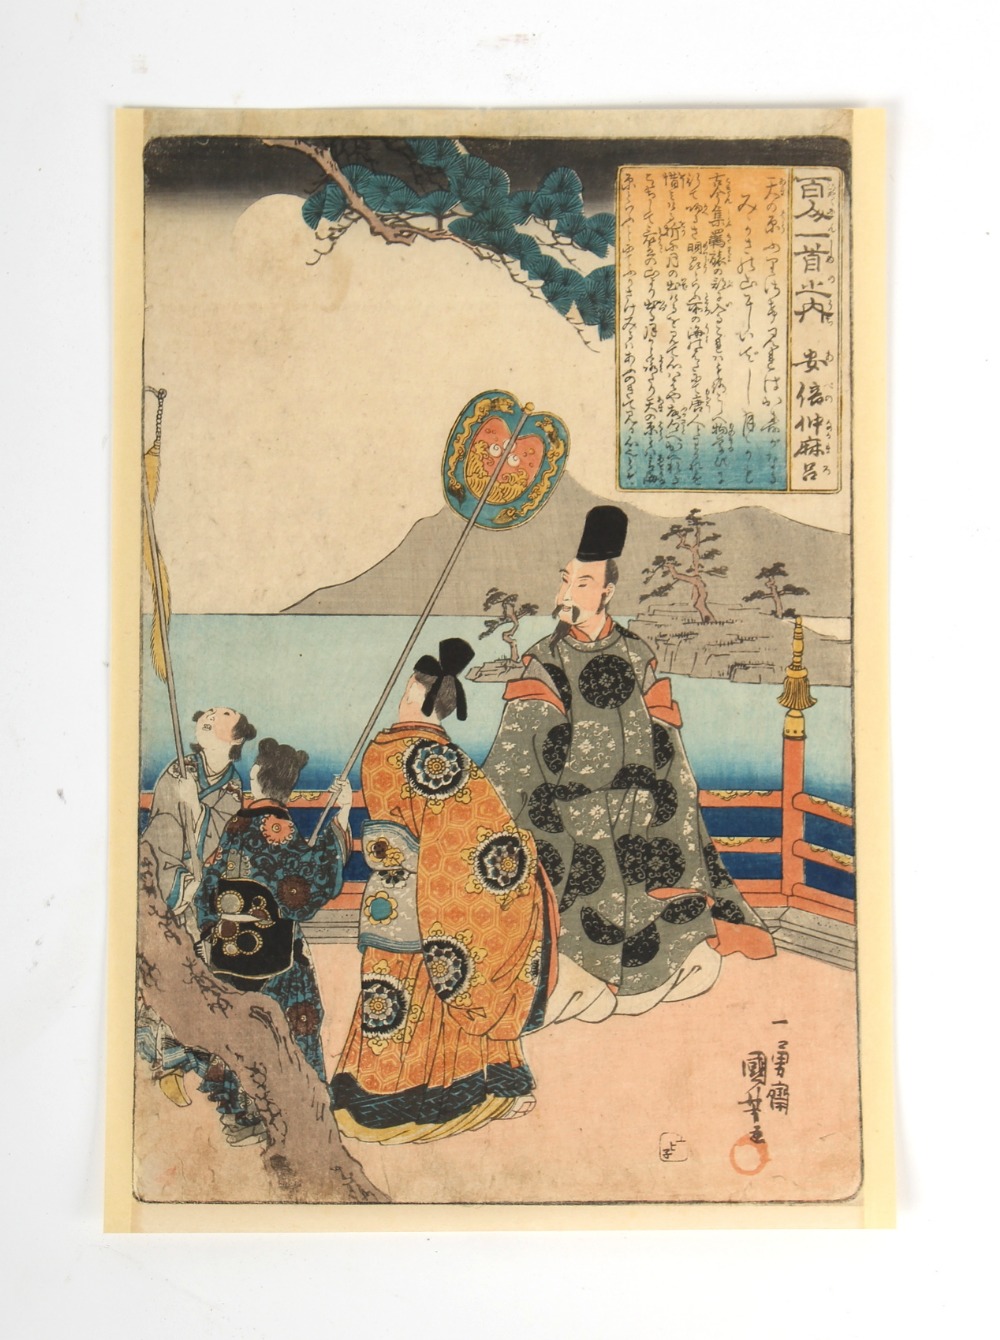 A collection of Japanese woodblock prints - Kuniyoshi Utagawa (1798-1861) - The Poet Abe no Nakamaro